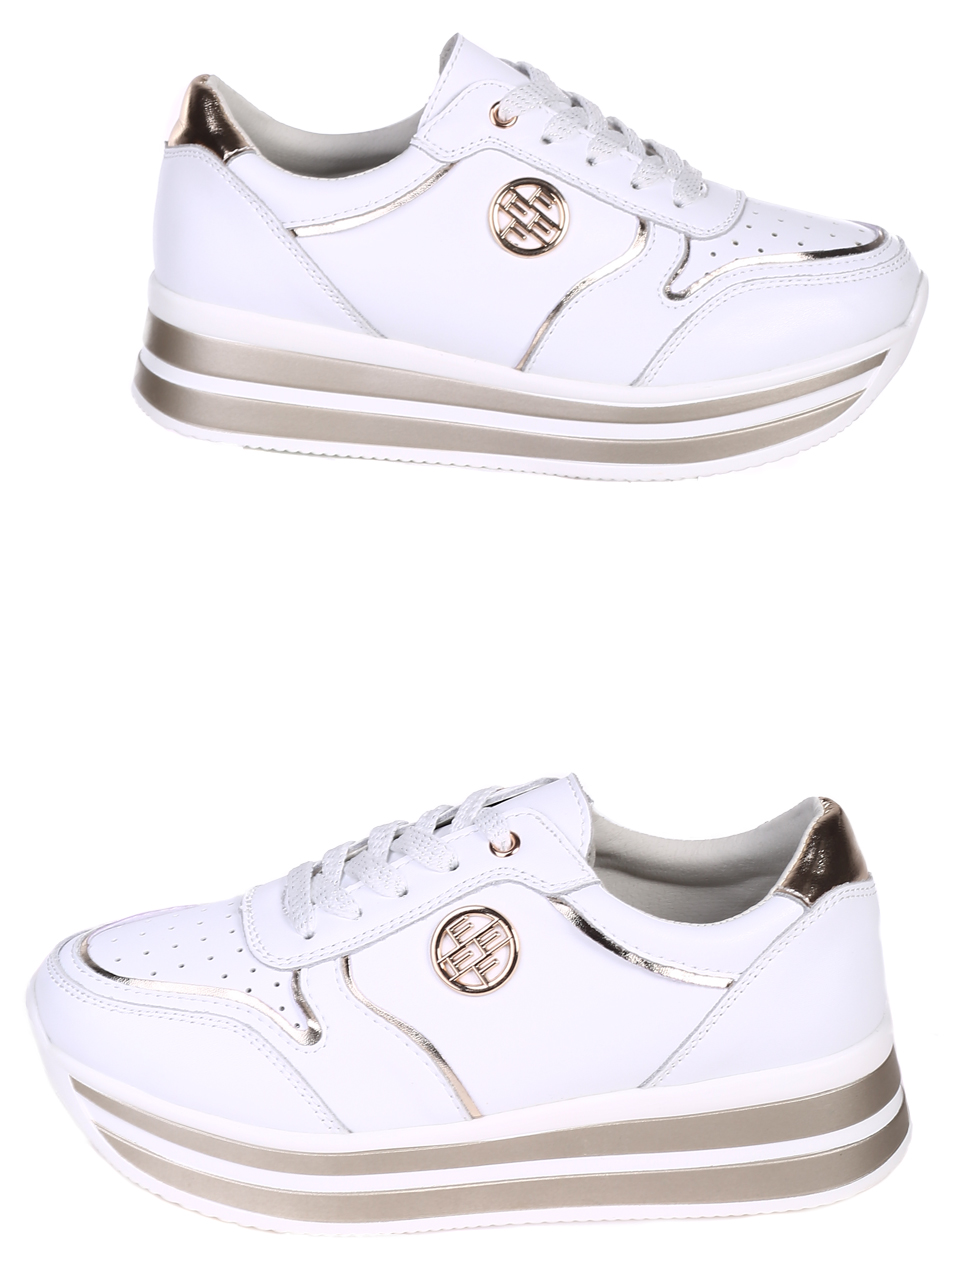 Ежедневни дамски комфортни обувки от естествена кожа в бяло 3AF-22118 white